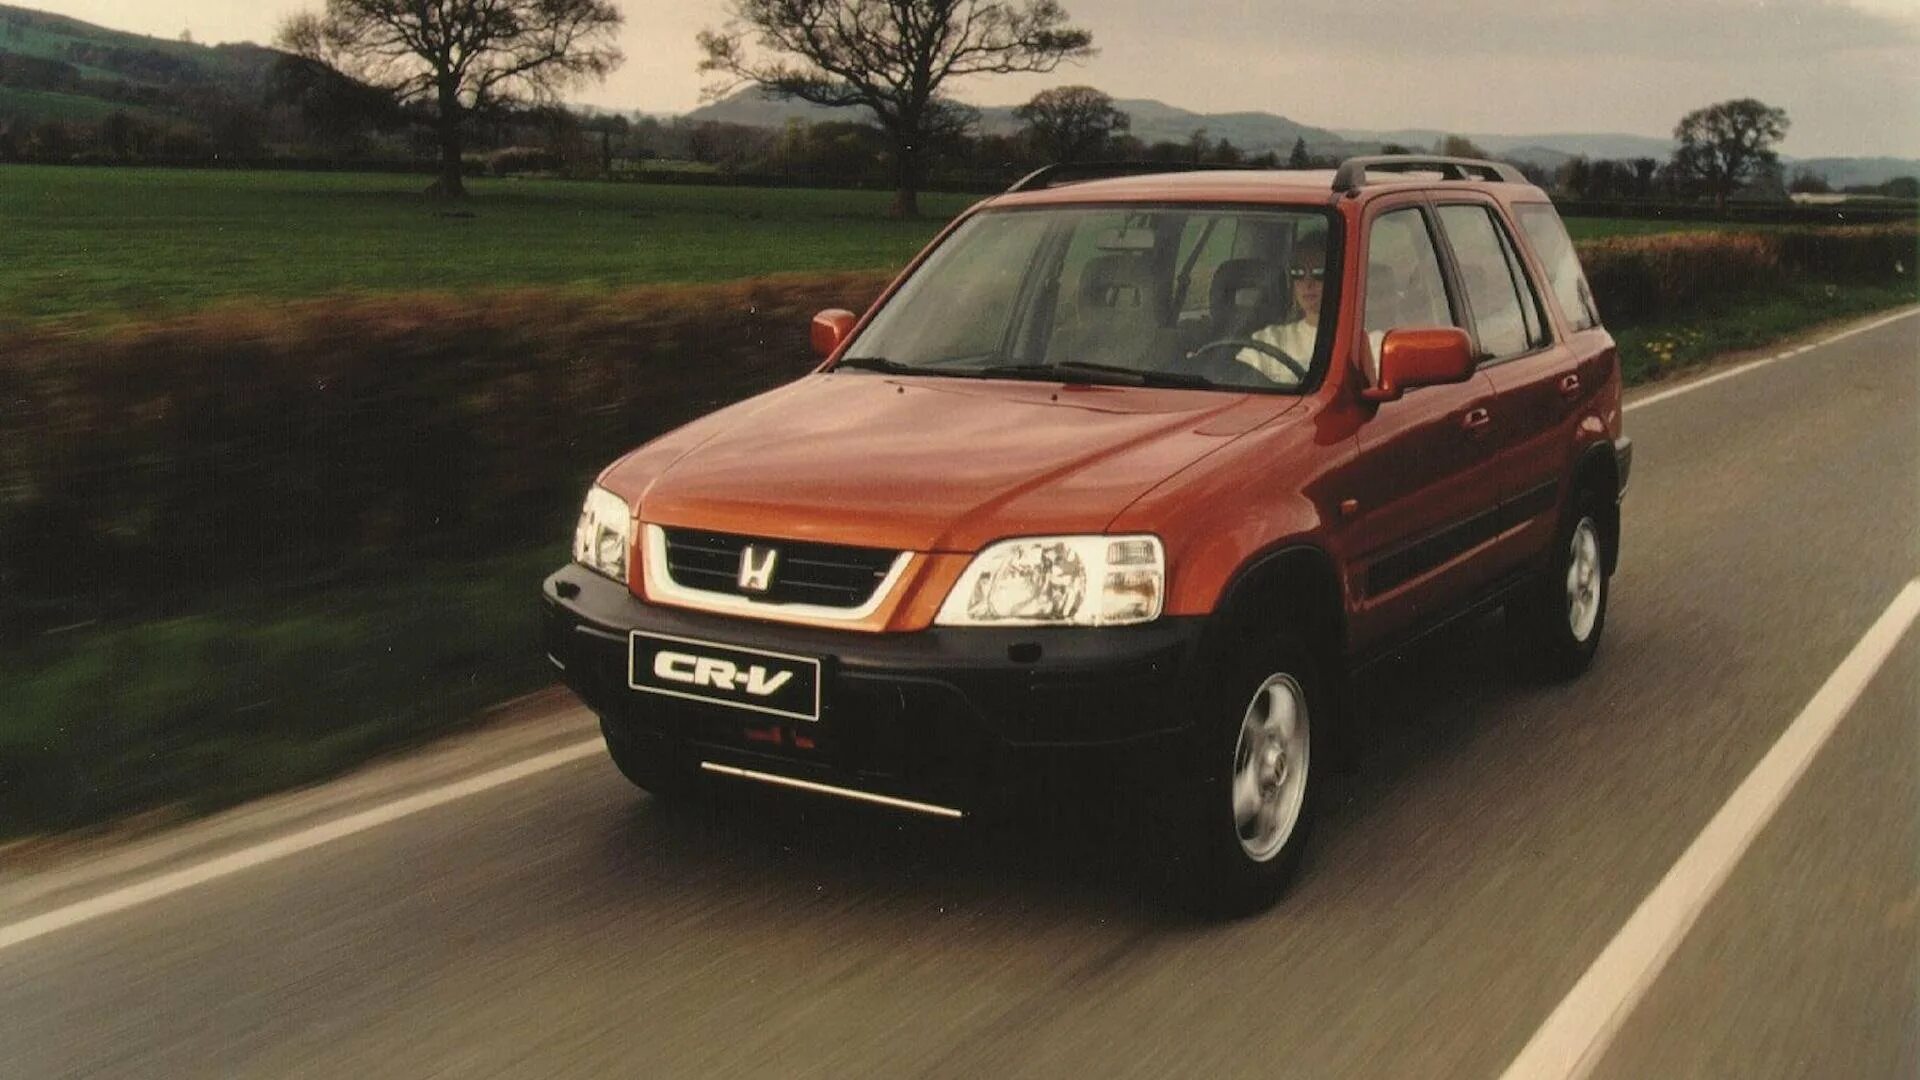 Хонда црв 1997 год. Honda CR-V 1995. Honda CRV 1995. Хонда СРВ 1 поколения. Хонда CRV Rd 1 поколение.